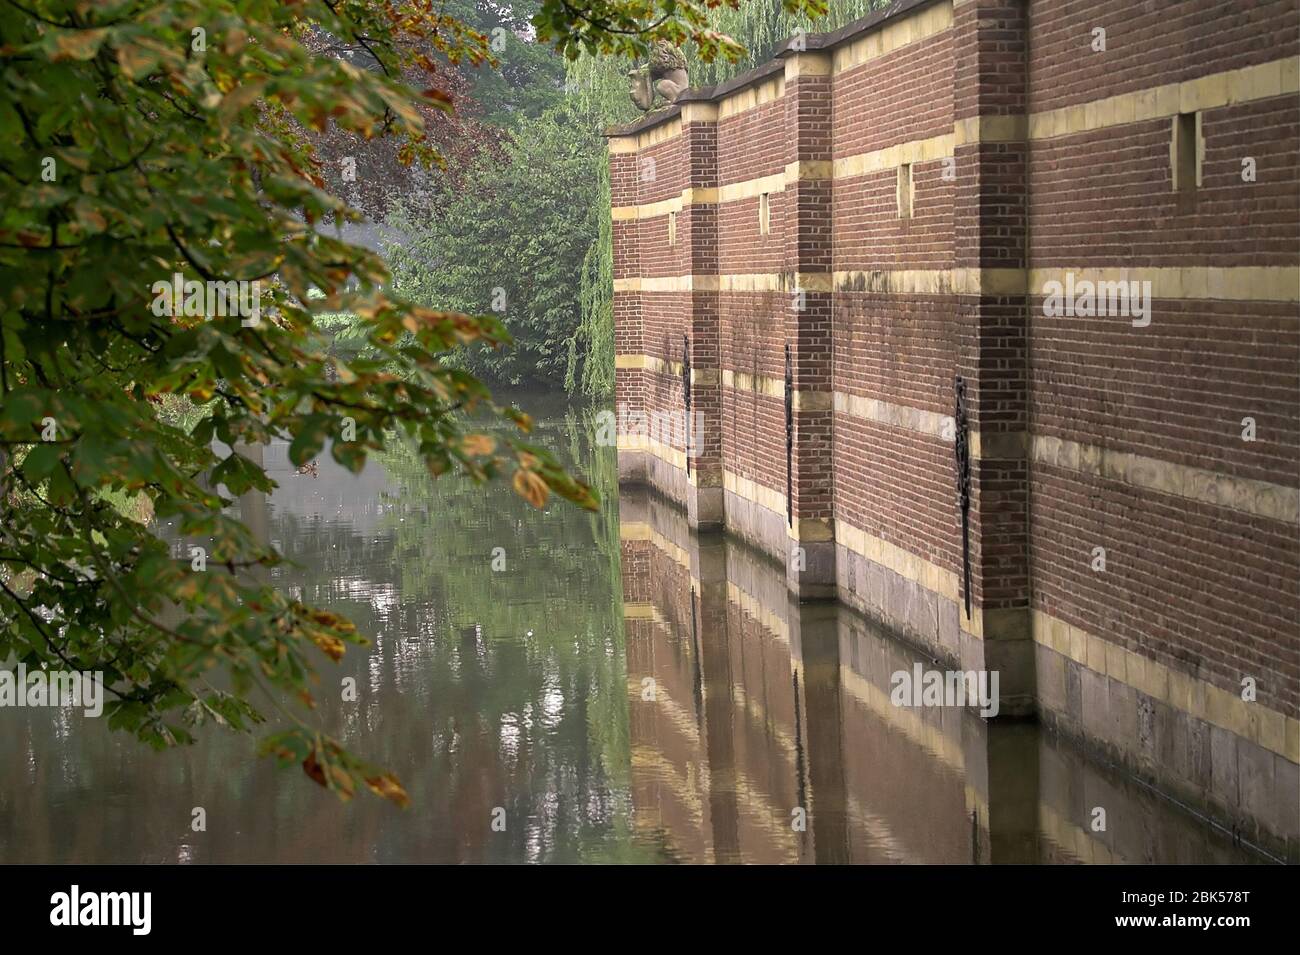 A brick wall rising above the moat. Eine Mauer erhebt sich über dem Wassergraben. Ceglany mur wznoszący sie nad fosą. 上昇在護城河上的磚牆。 Stock Photo